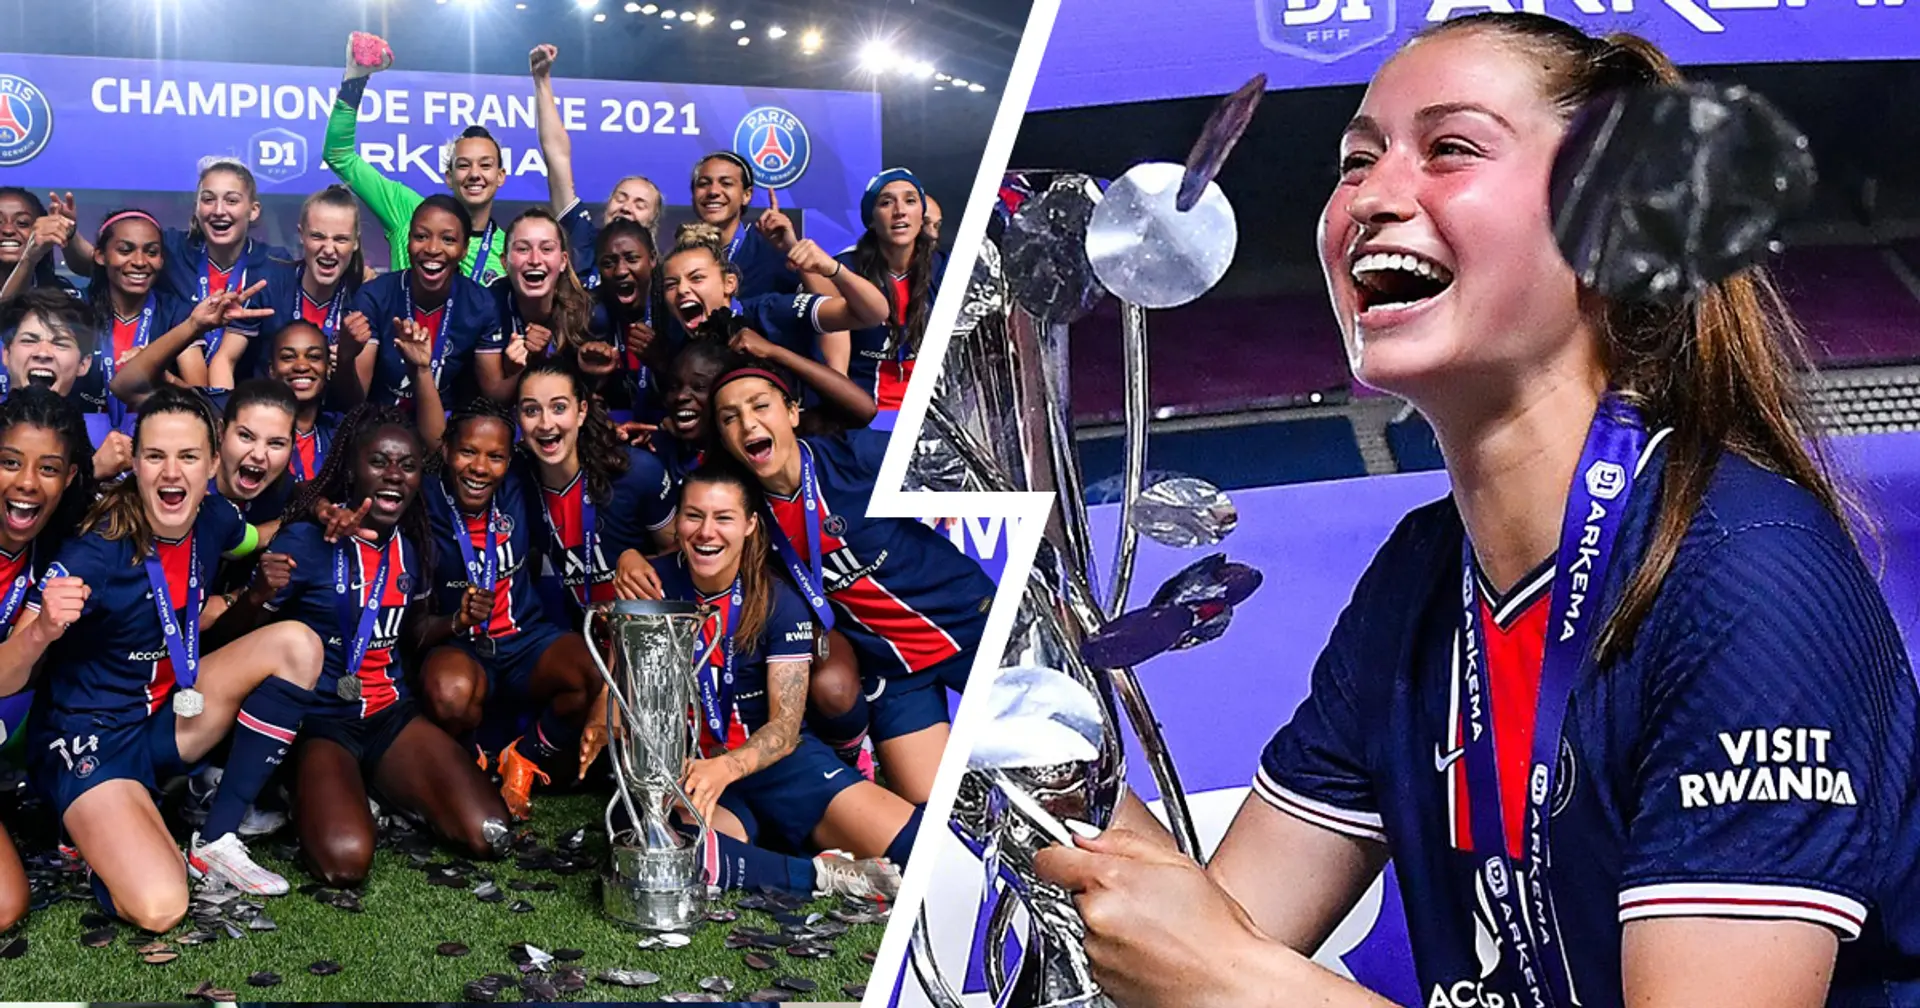 😍 Découvrez les plus belles photos de la remise du trophée de champion de France de D1 aux joueuses du PSG, ce vendredi